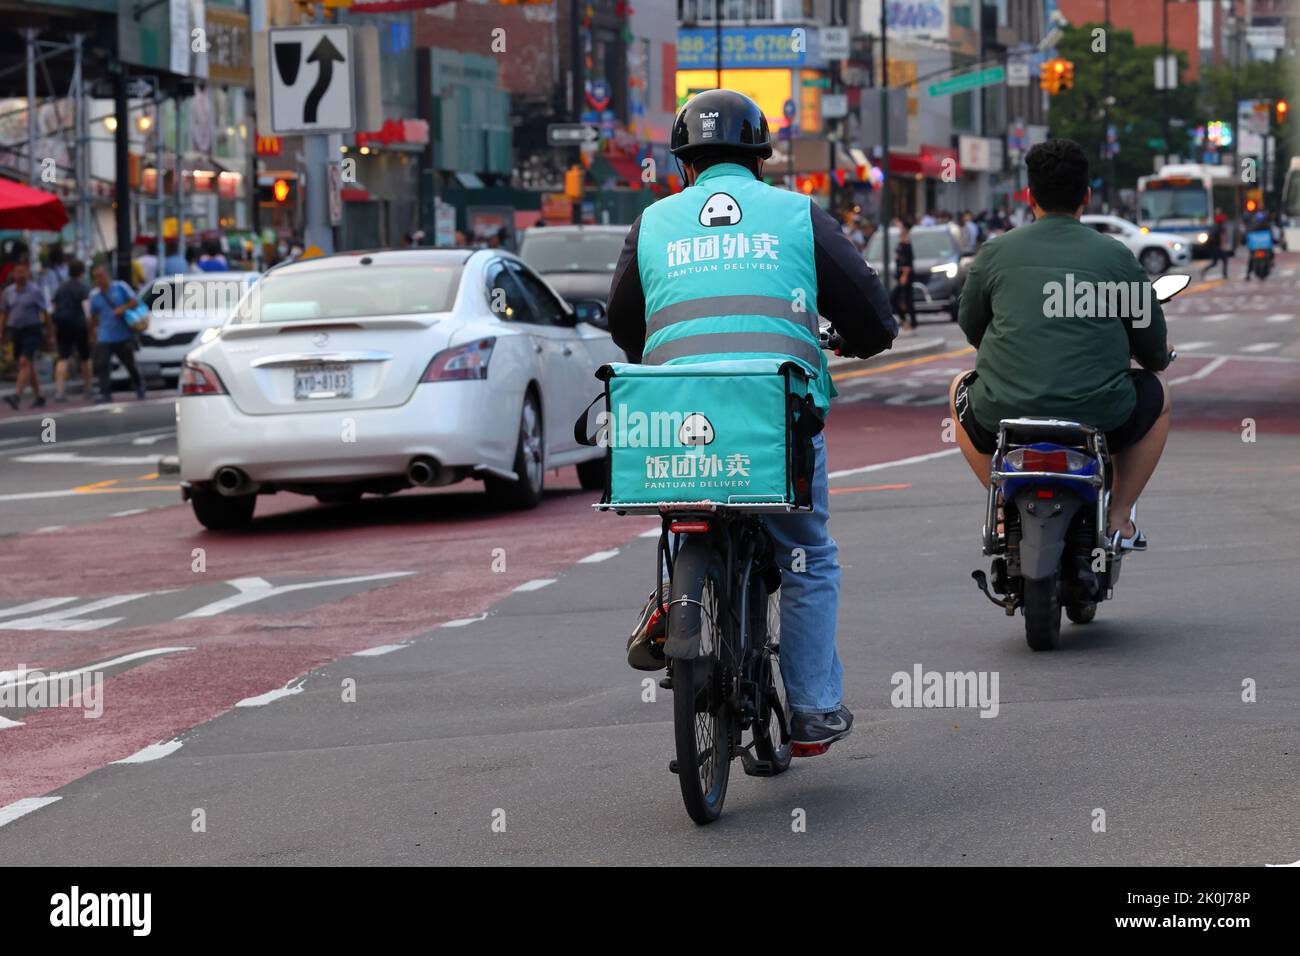 Una persona encargada de la entrega de Fantuan en una bicicleta e en el centro de Flushing, Nueva York. Fantuan 飯糰外賣 Entrega de comida asiática Foto de stock